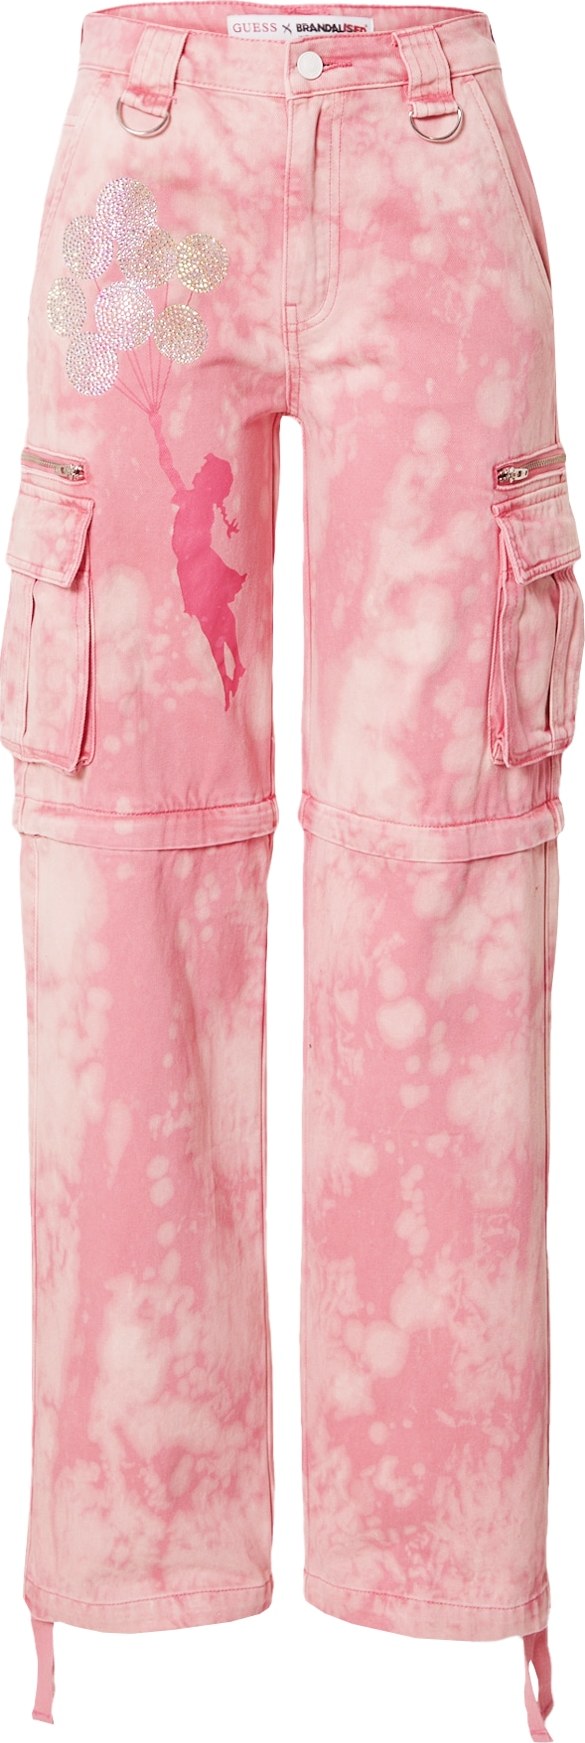 GUESS Džíny s kapsami 'MALIA' pink / růžová / pastelově růžová